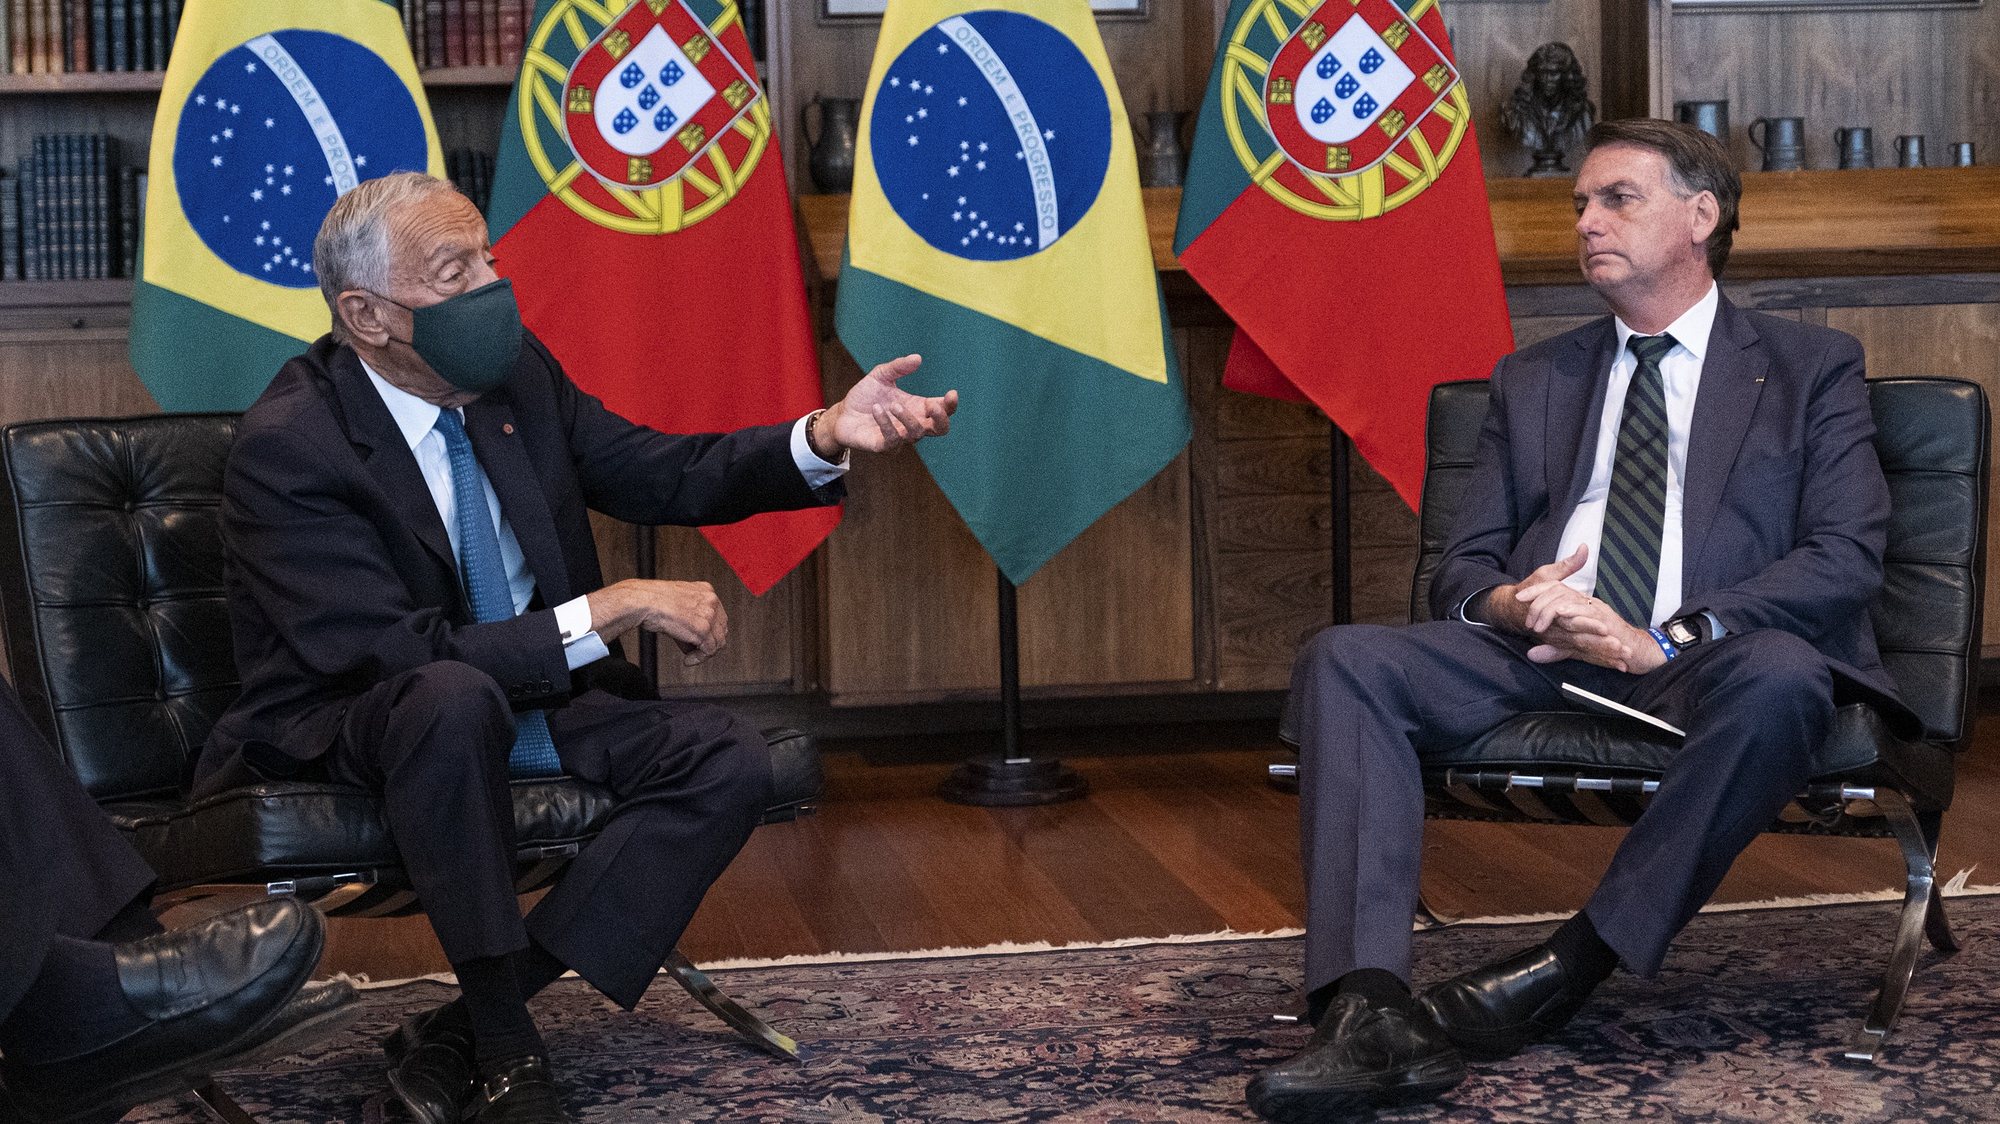 O Presidente da República de Portugal, Marcelo Rebelo de Sousa (E), conversa com o Presidente da República do Brasil, Jair Bolsonaro (D) durante o encontro no Palácio da Alvorada, em Brasília, Brasil, 2 de Agoto de 2021. FOTO RUI OCHÔA/ PRESIDÊNCIA DA REPÚBLICA/ LUSA